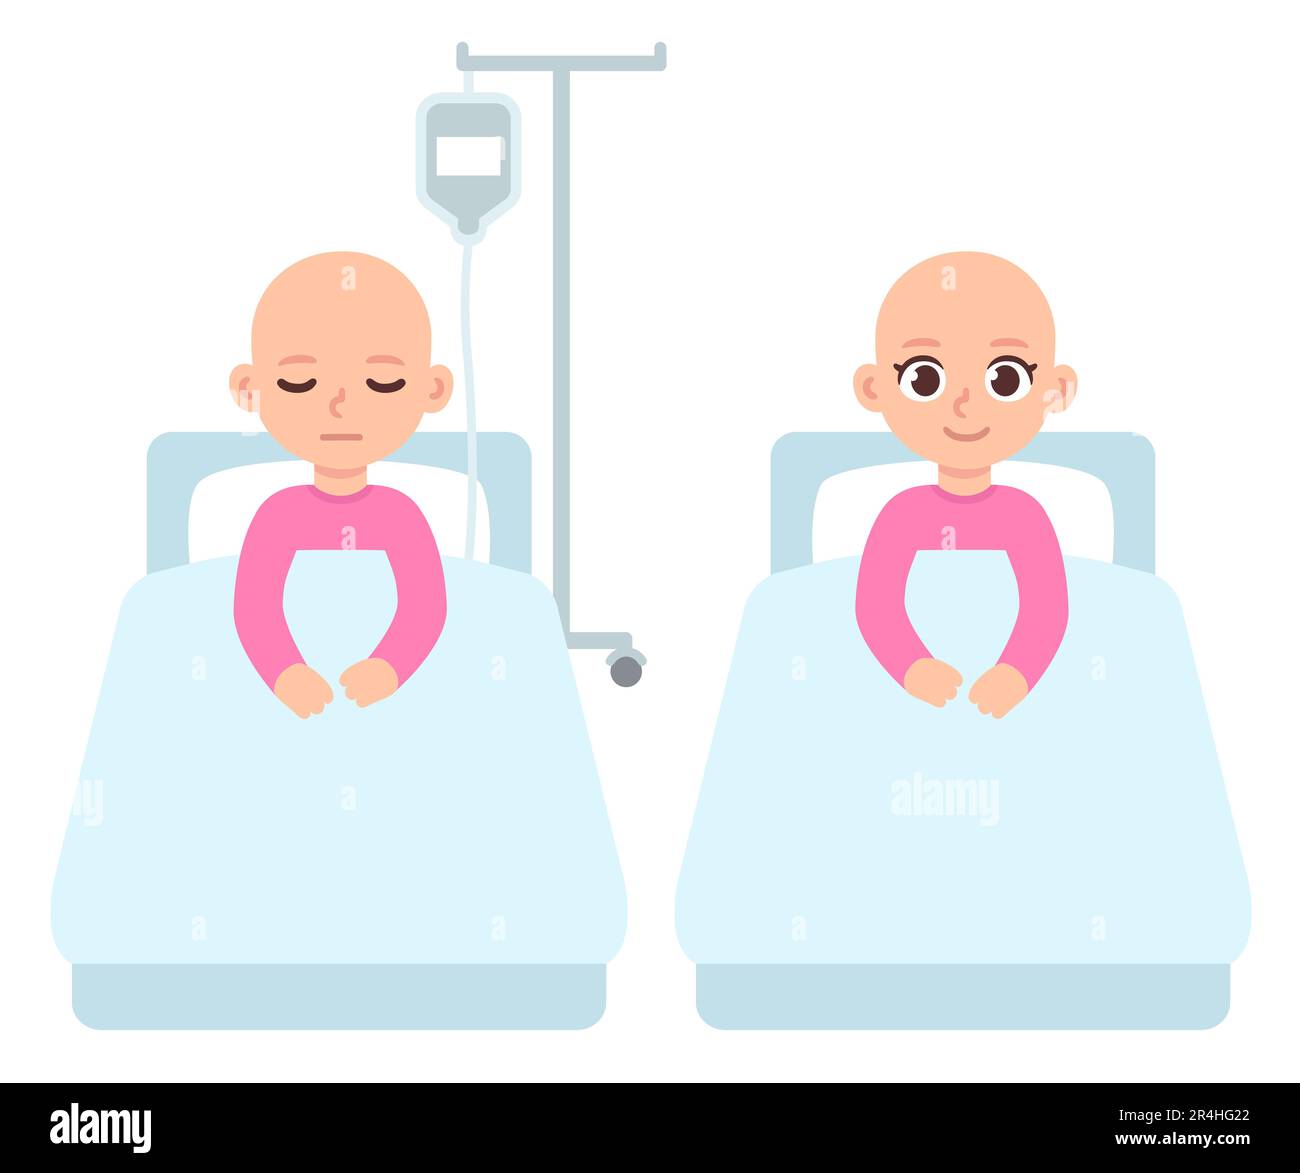 Bambino con cancro, bambina in letto d'ospedale che riceve un trattamento di chemioterapia IV. Simpatica illustrazione dei cartoni animati in stile vettoriale piatto. Illustrazione Vettoriale